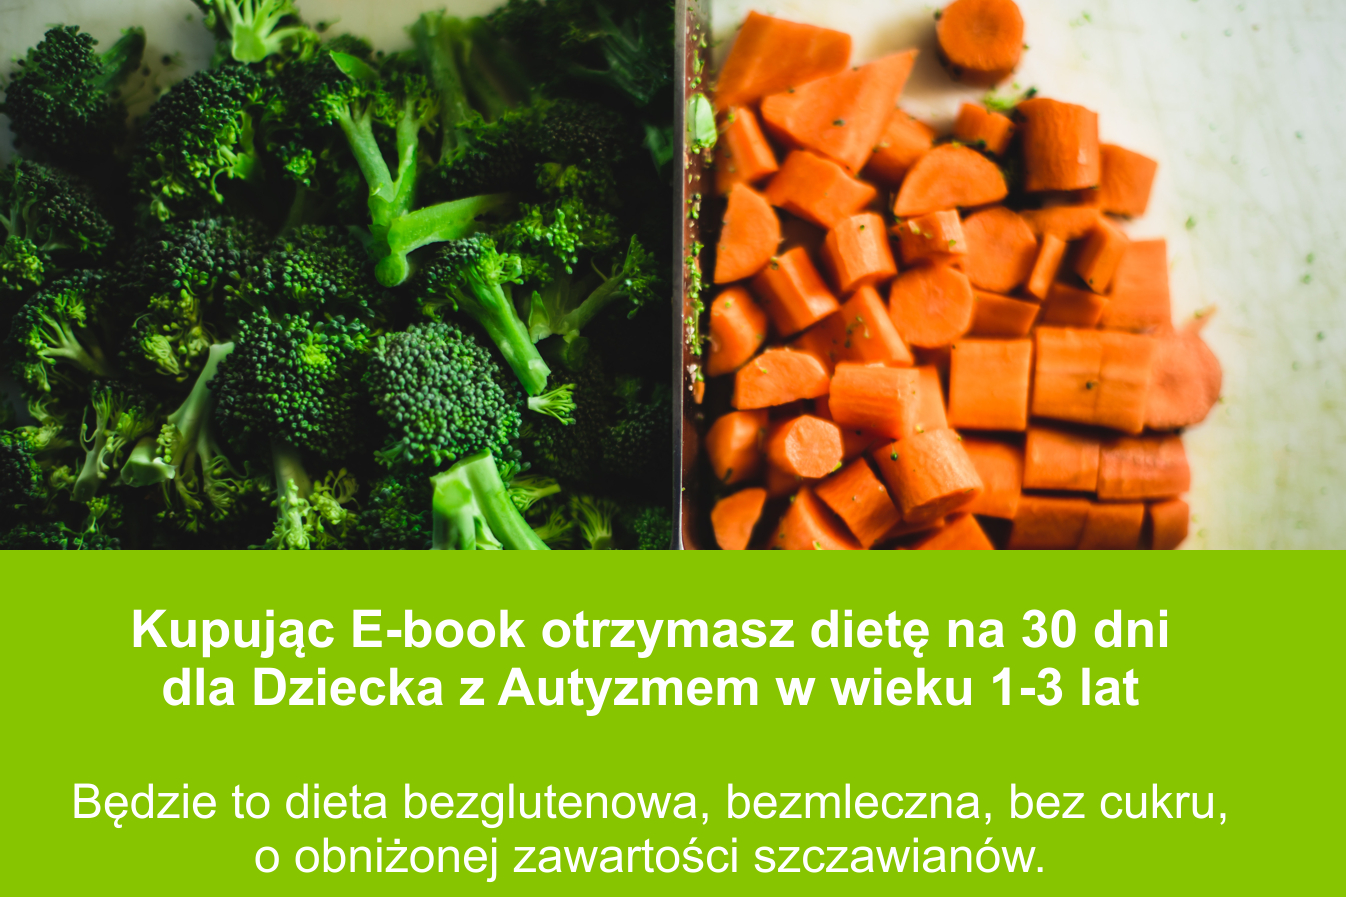 E-book Dieta w autyzmie dla Dziecka na 30 dni